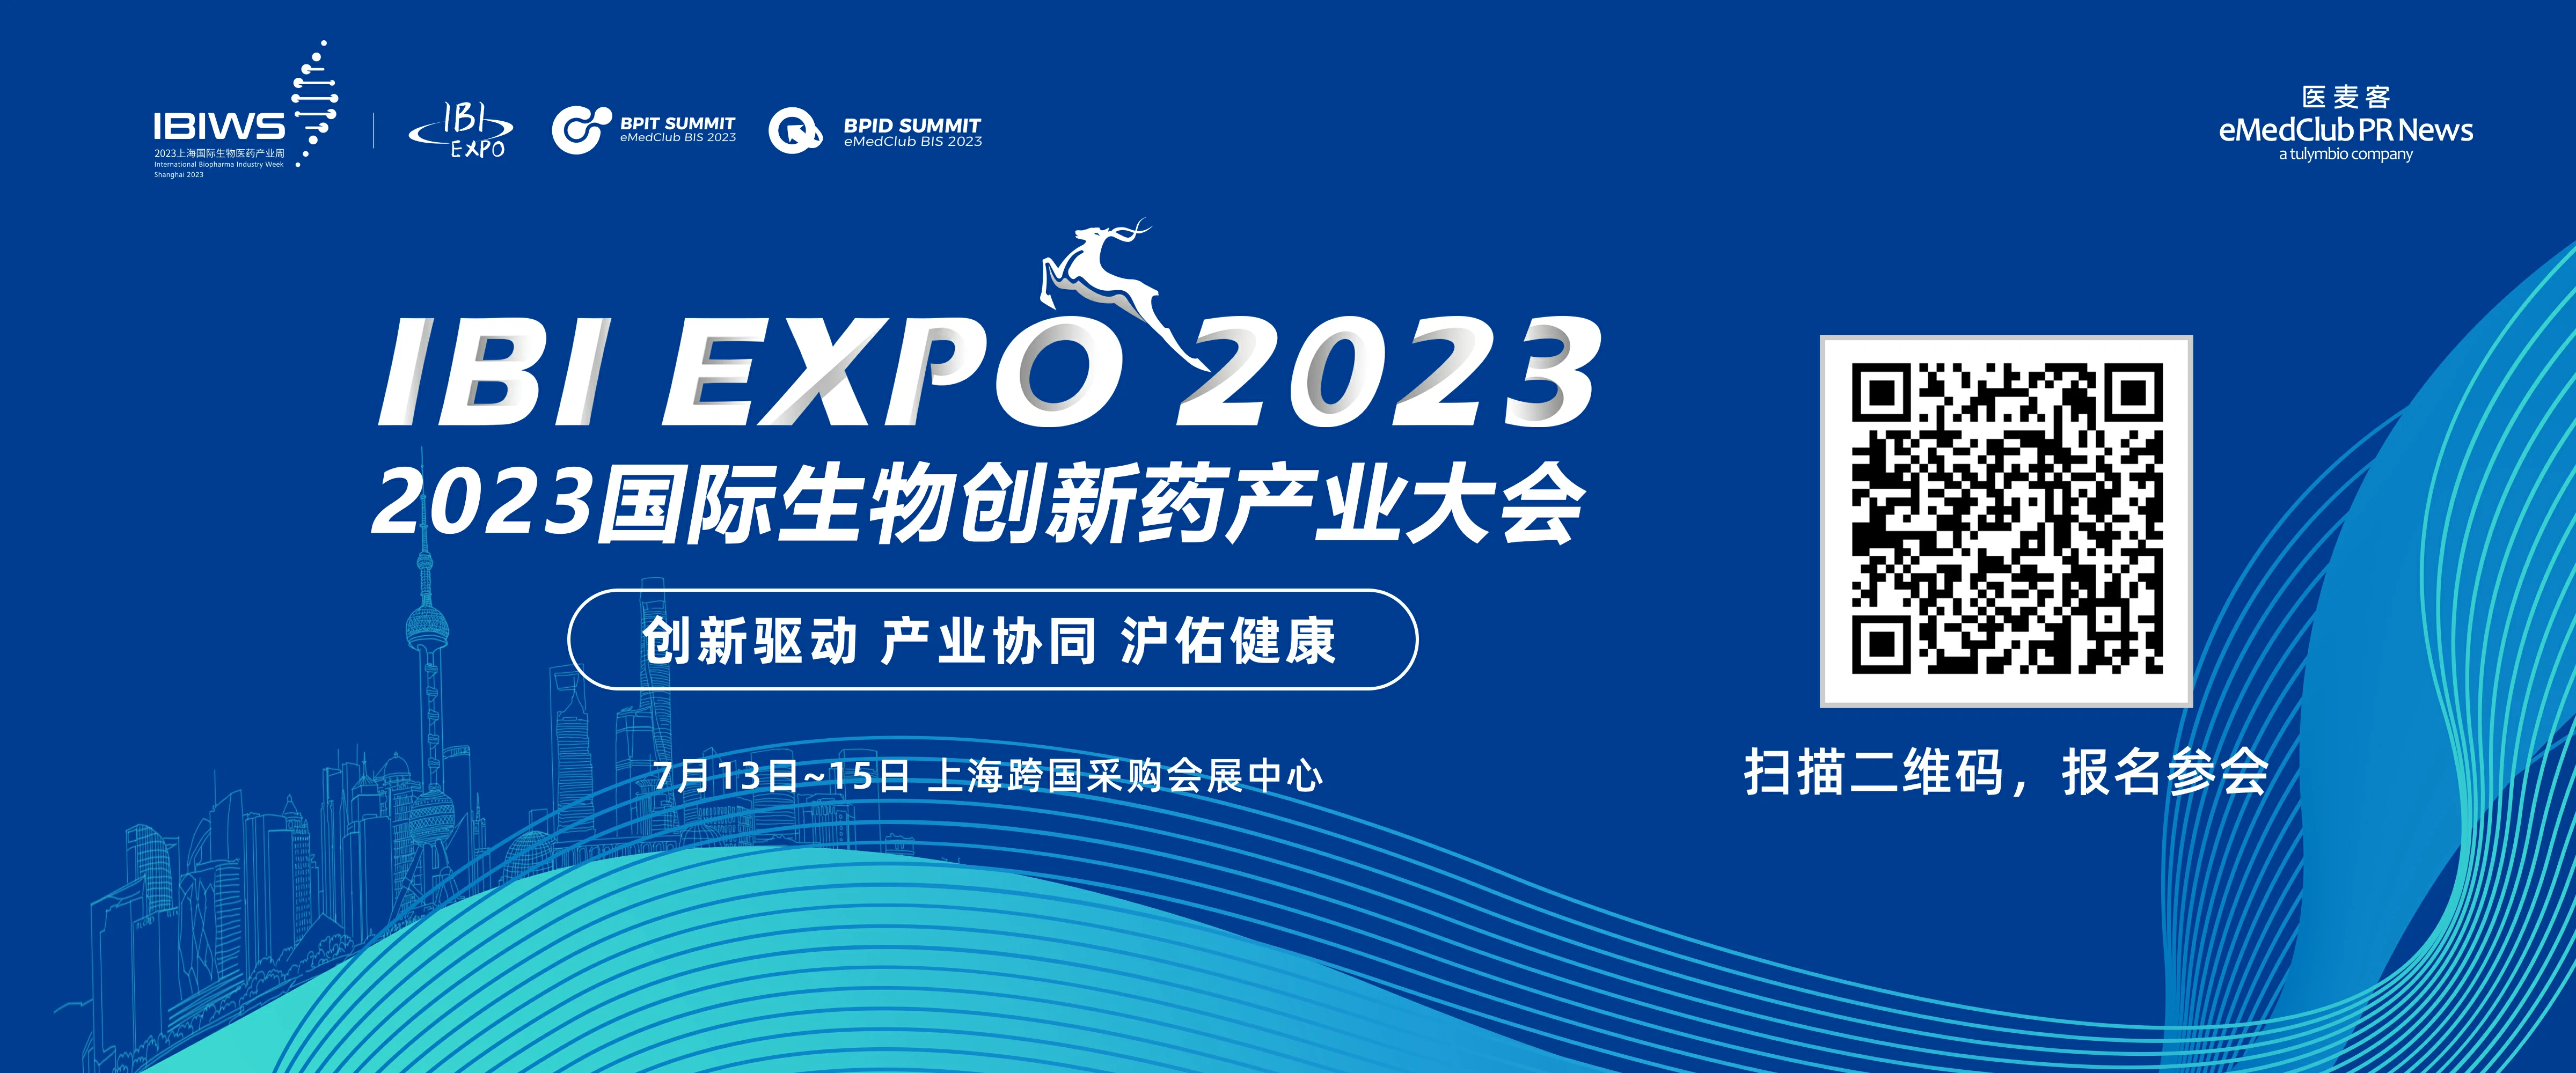  展会邀请| 福流生物邀您参加IBI EXPO 2023国际生物创新药产业大会